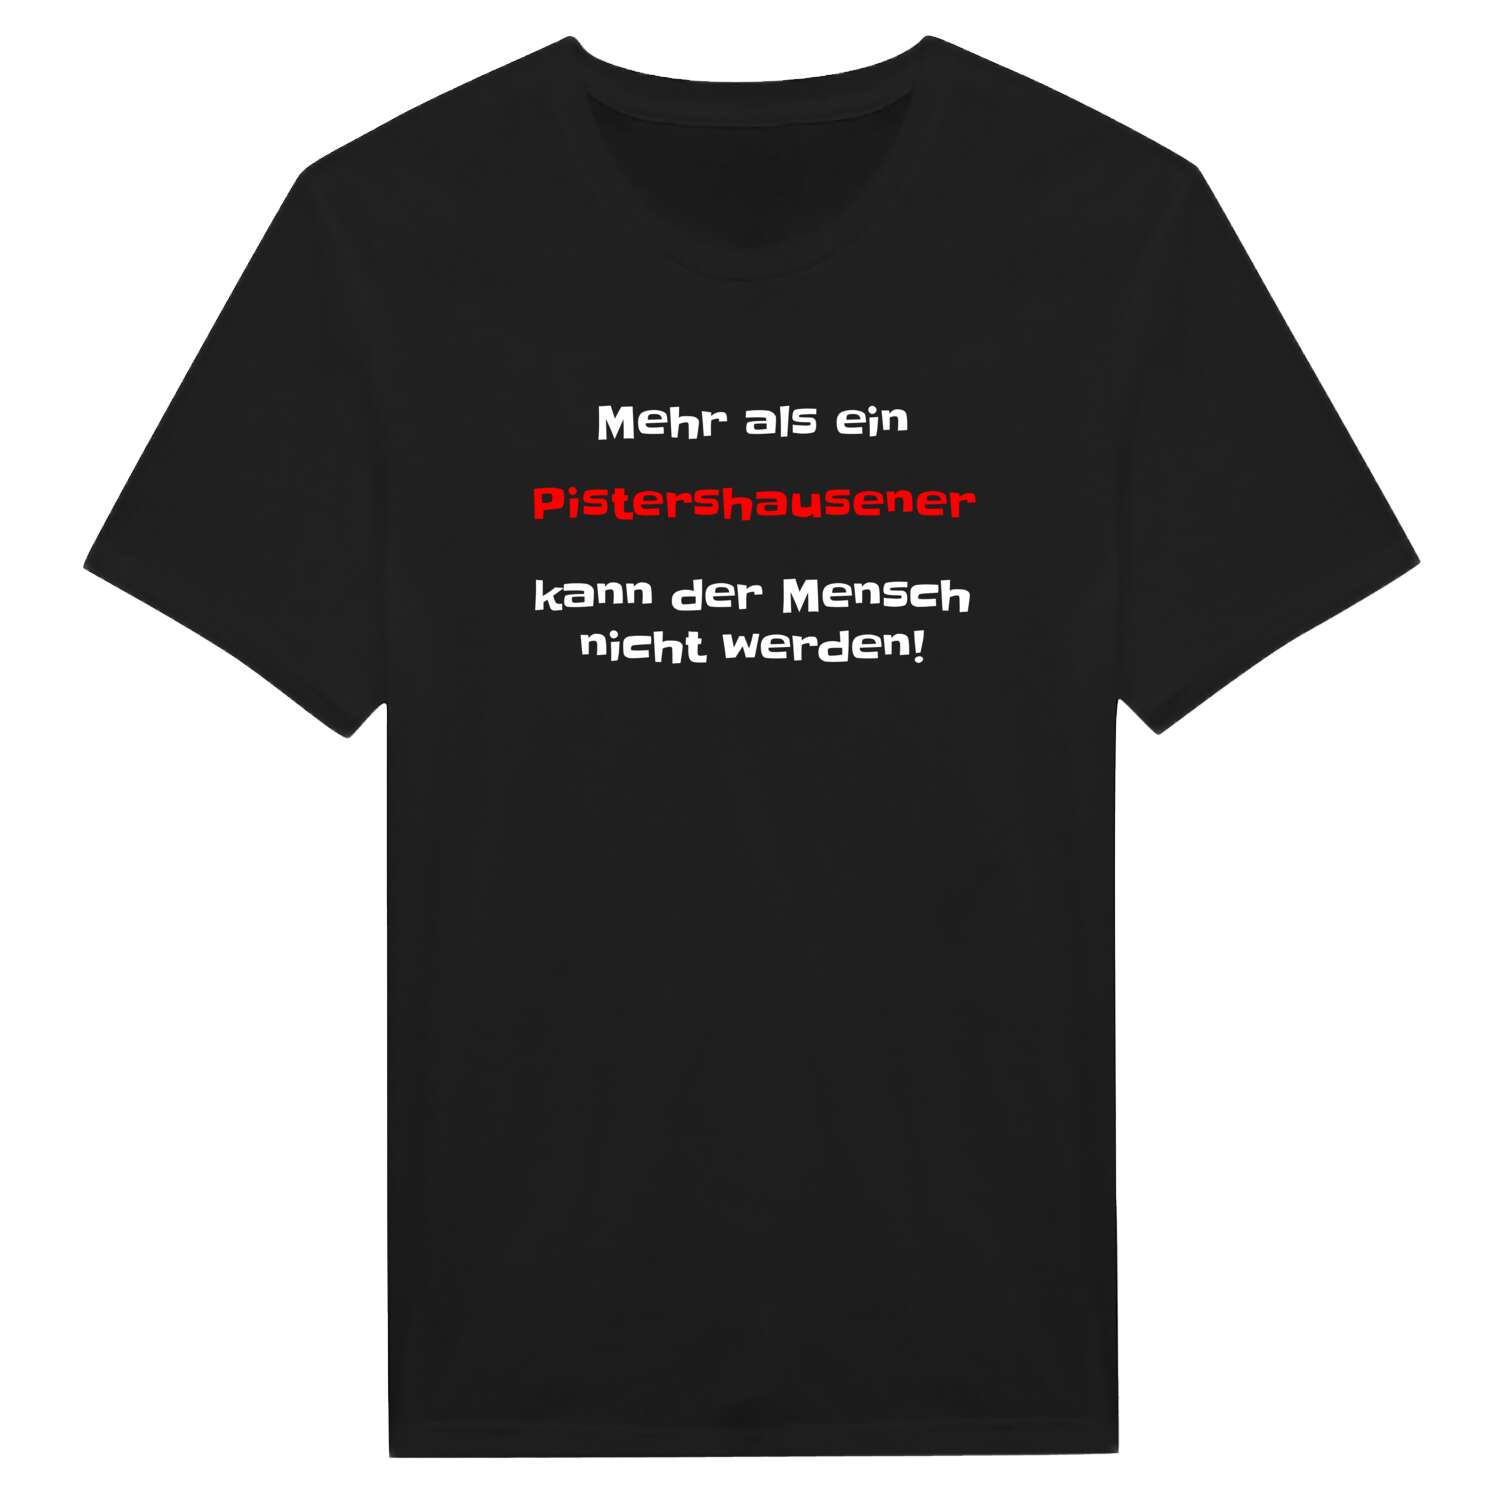 Pistershausen T-Shirt »Mehr als ein«